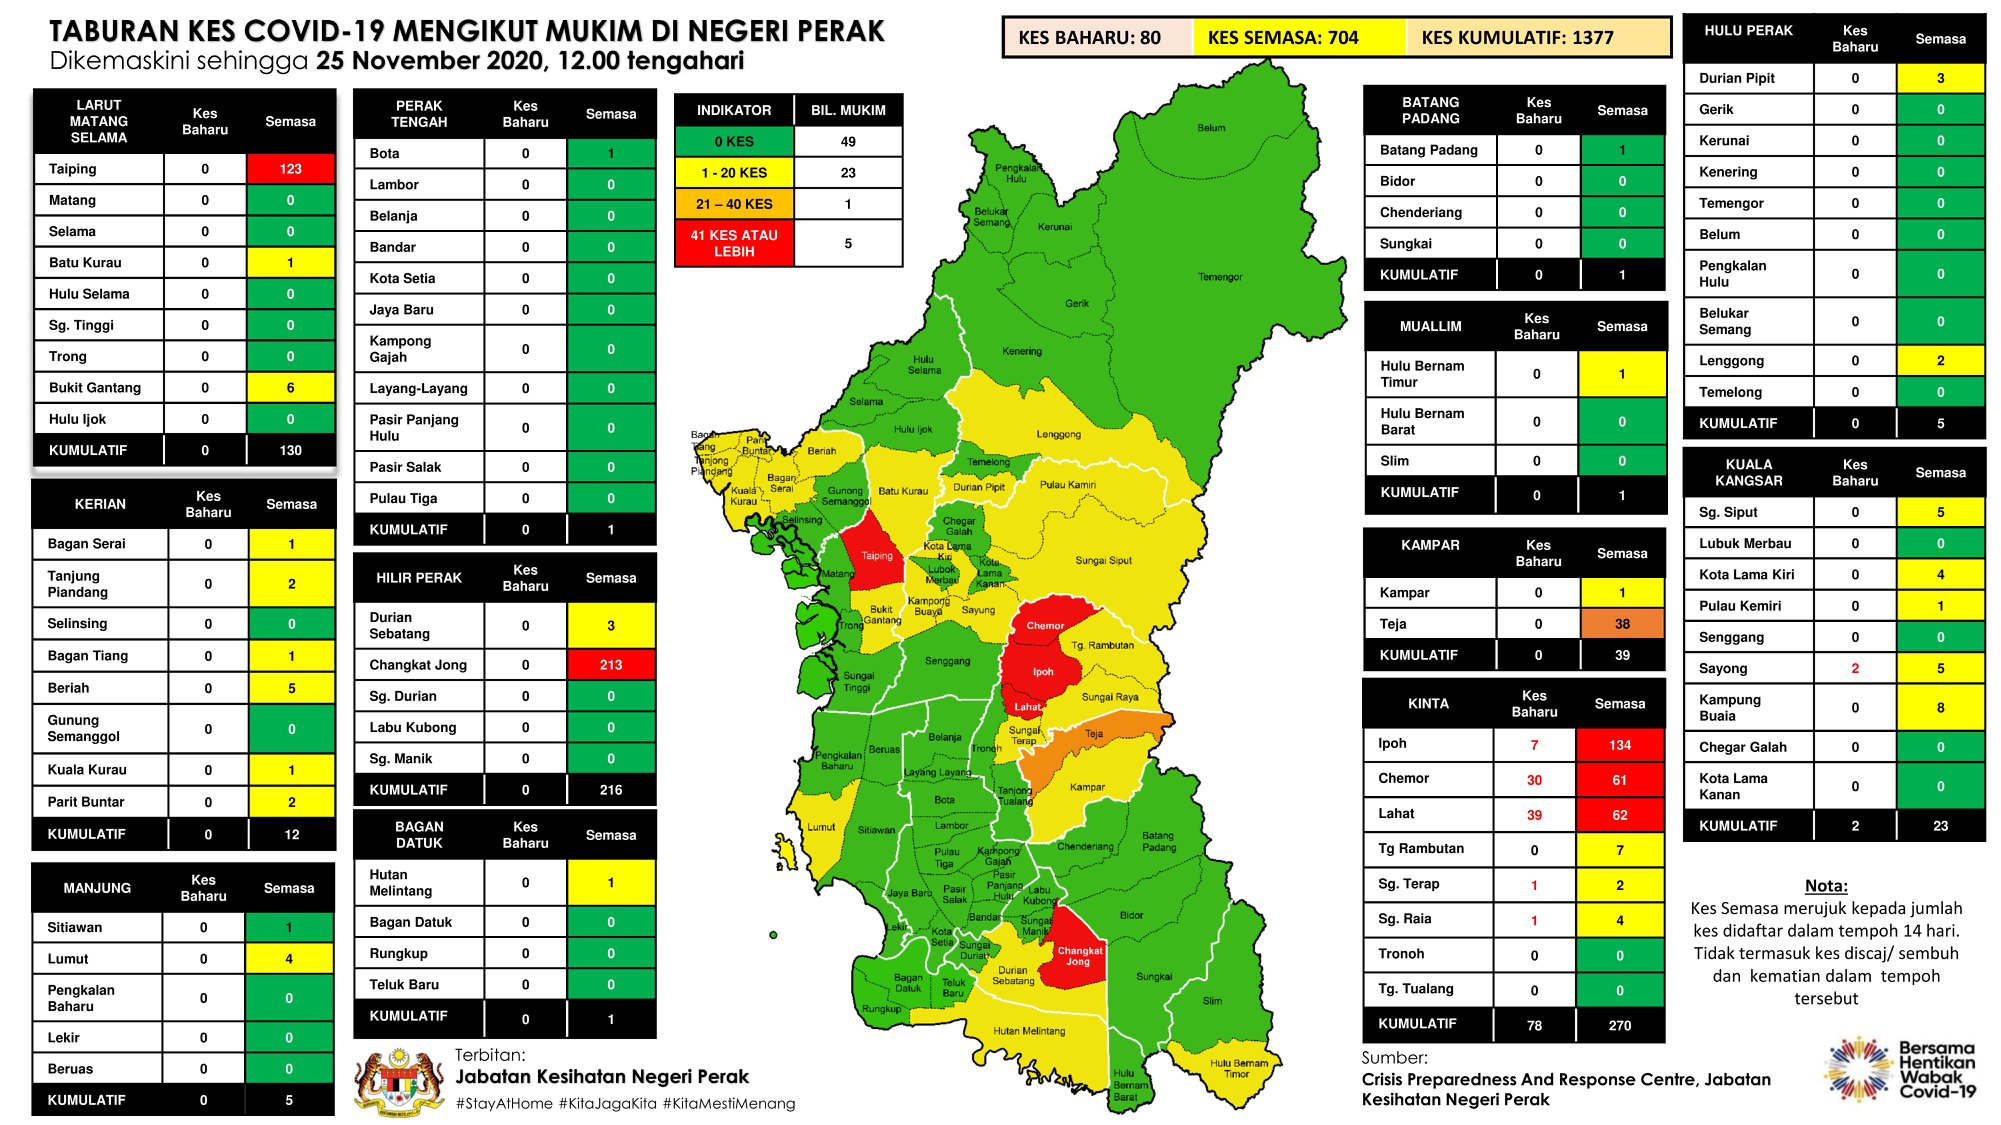 霹州在最近14天于32个地区累计704宗当前病例，其中近打县高居榜首，共累计270宗当前病例。